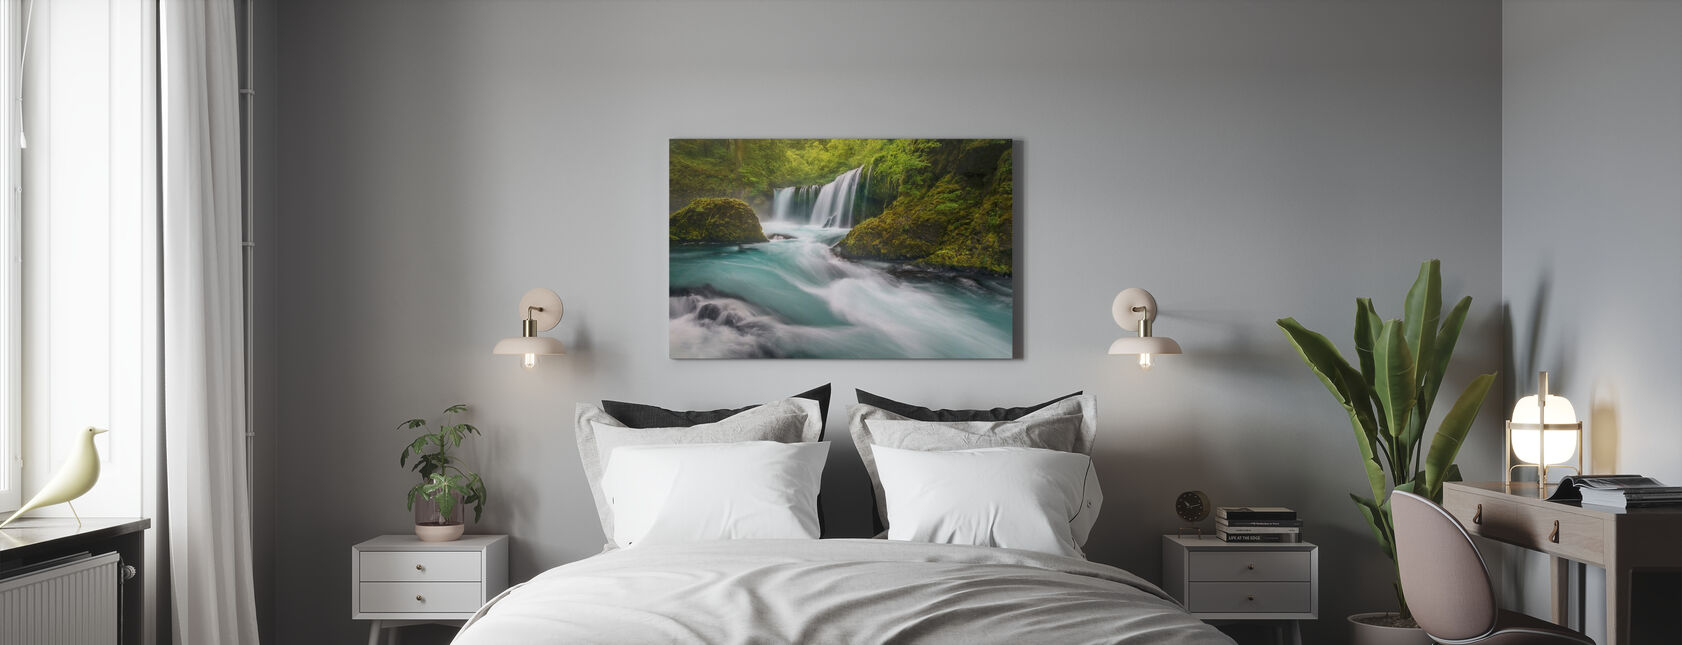 Spirit Falls - Canvas print - Bedroom